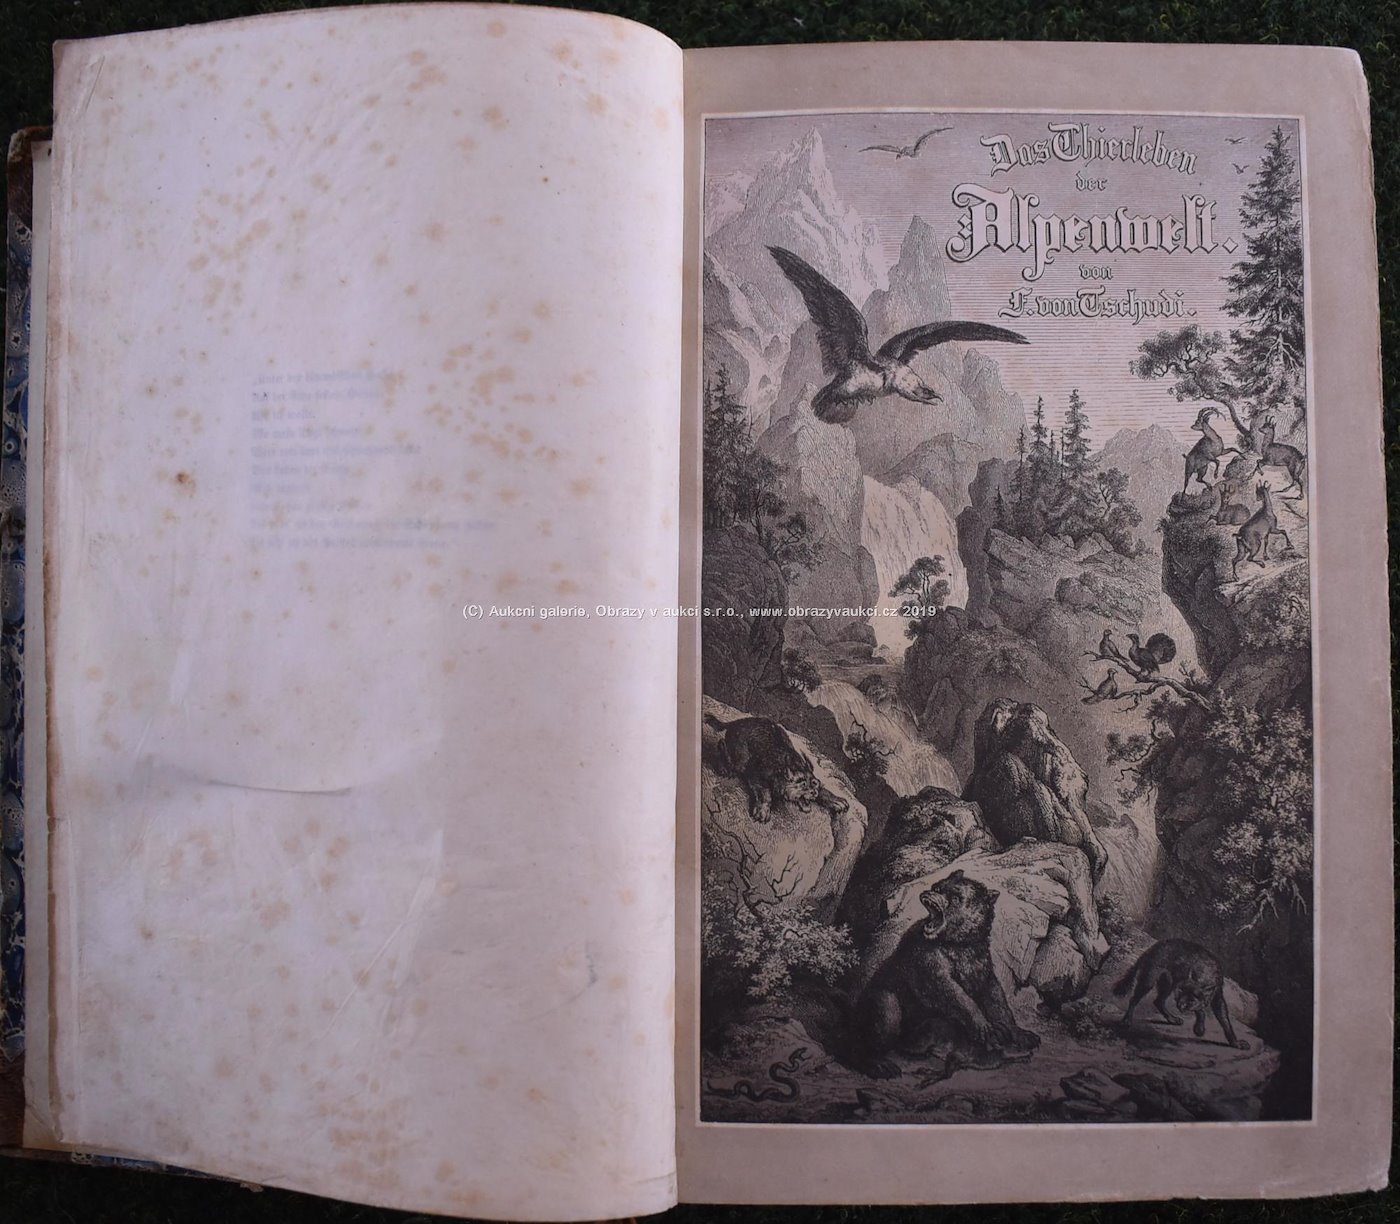 von Tschudi, Brendel, Altum - Ilustrované knihy o zvířatech z 2. pol. 19. stol.